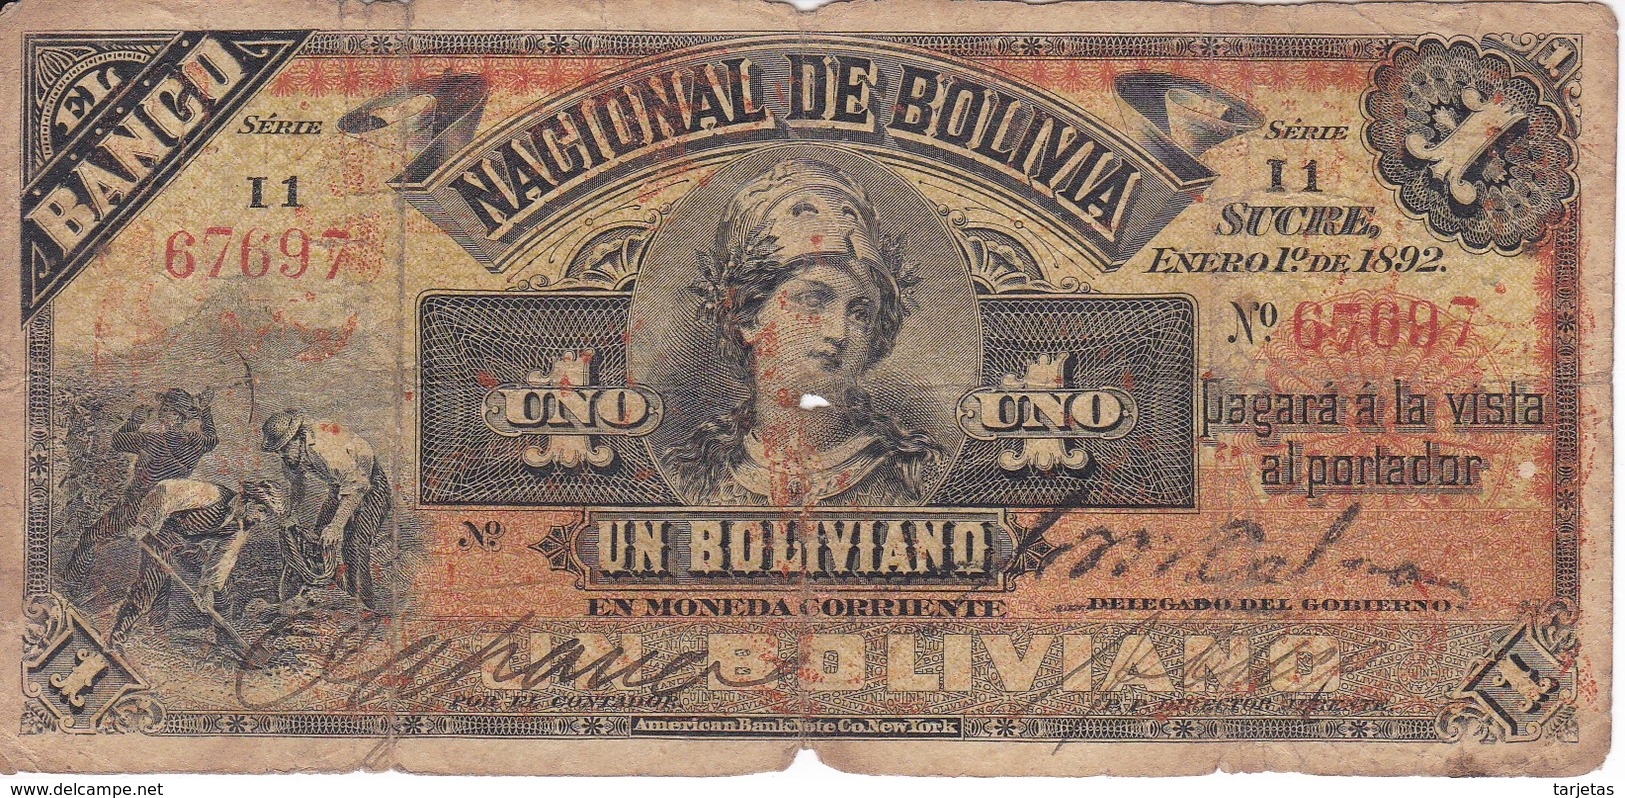 BILLETE DE BOLIVIA DE 1 BOLIVIANO DEL AÑO 1892 SERIE I1 (BANKNOTE) - Bolivie